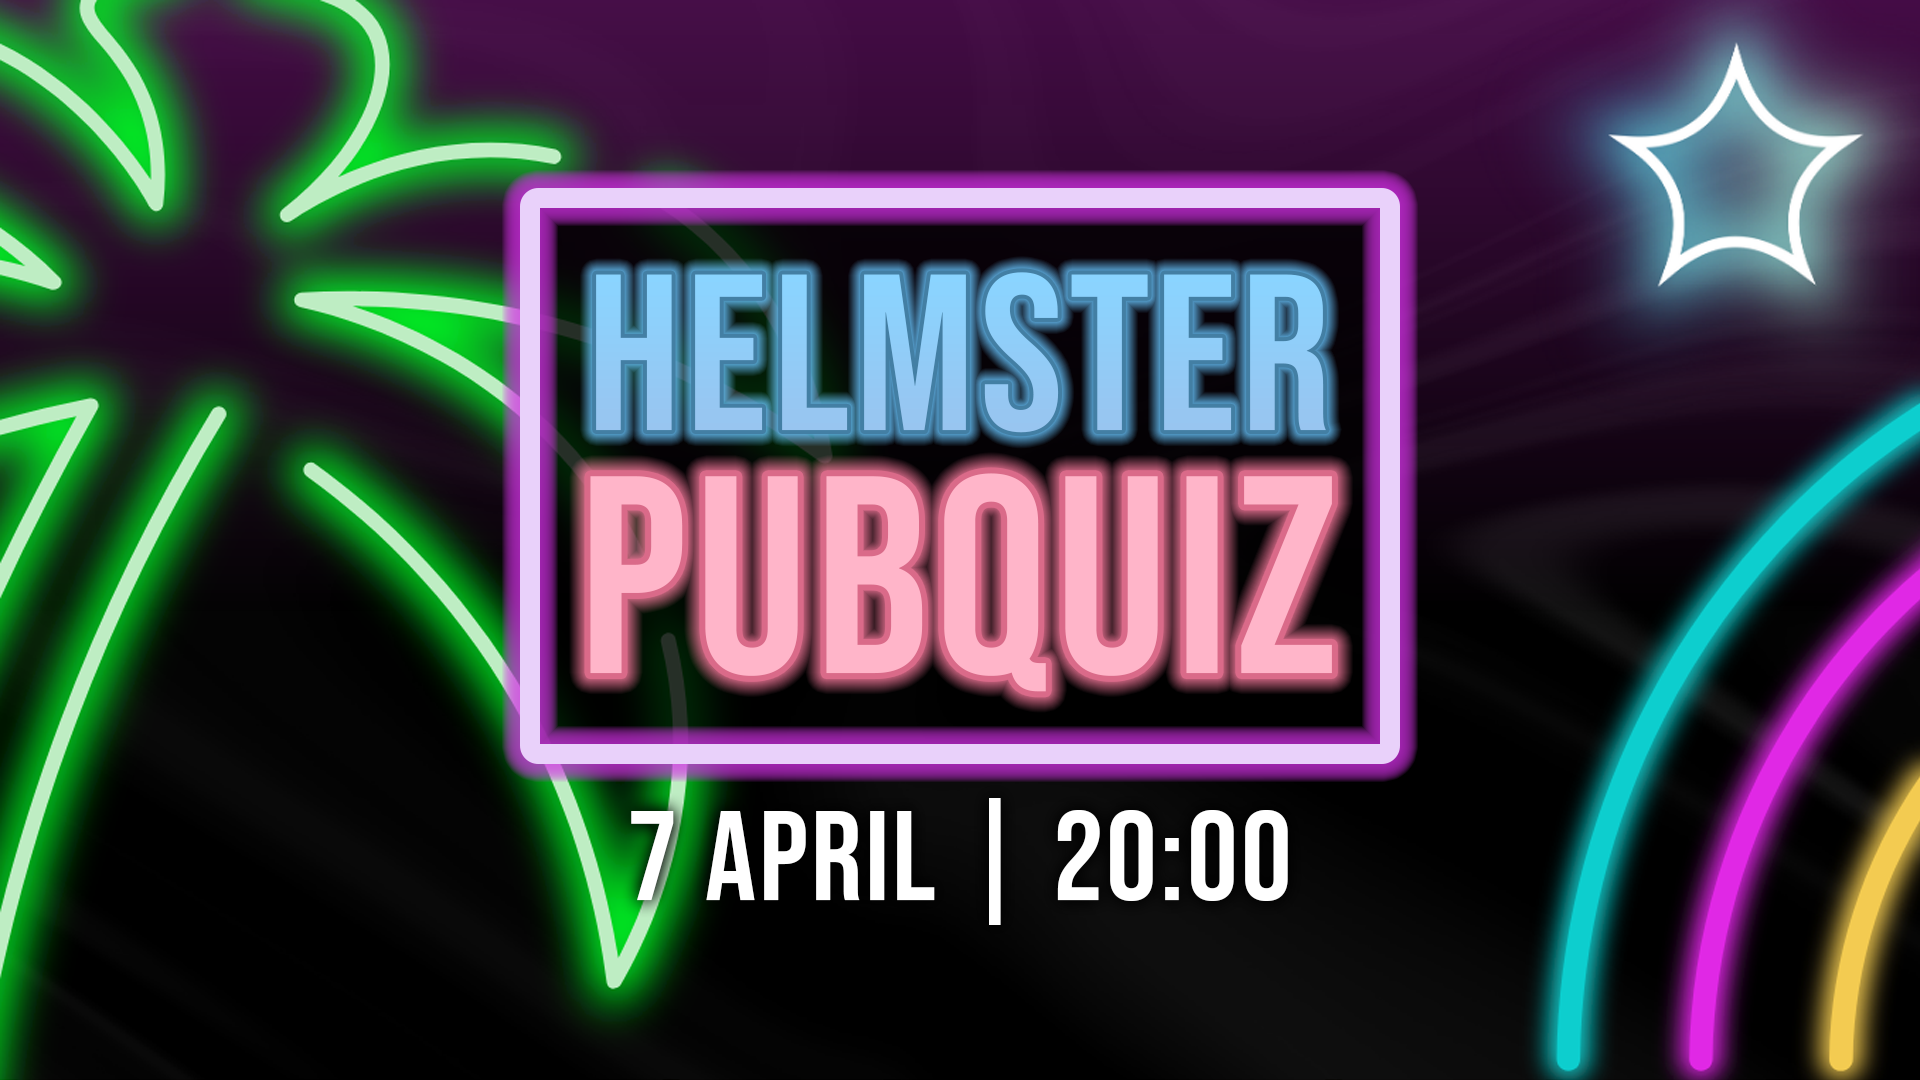 Helmster pubquiz - Evenement header achtergrond